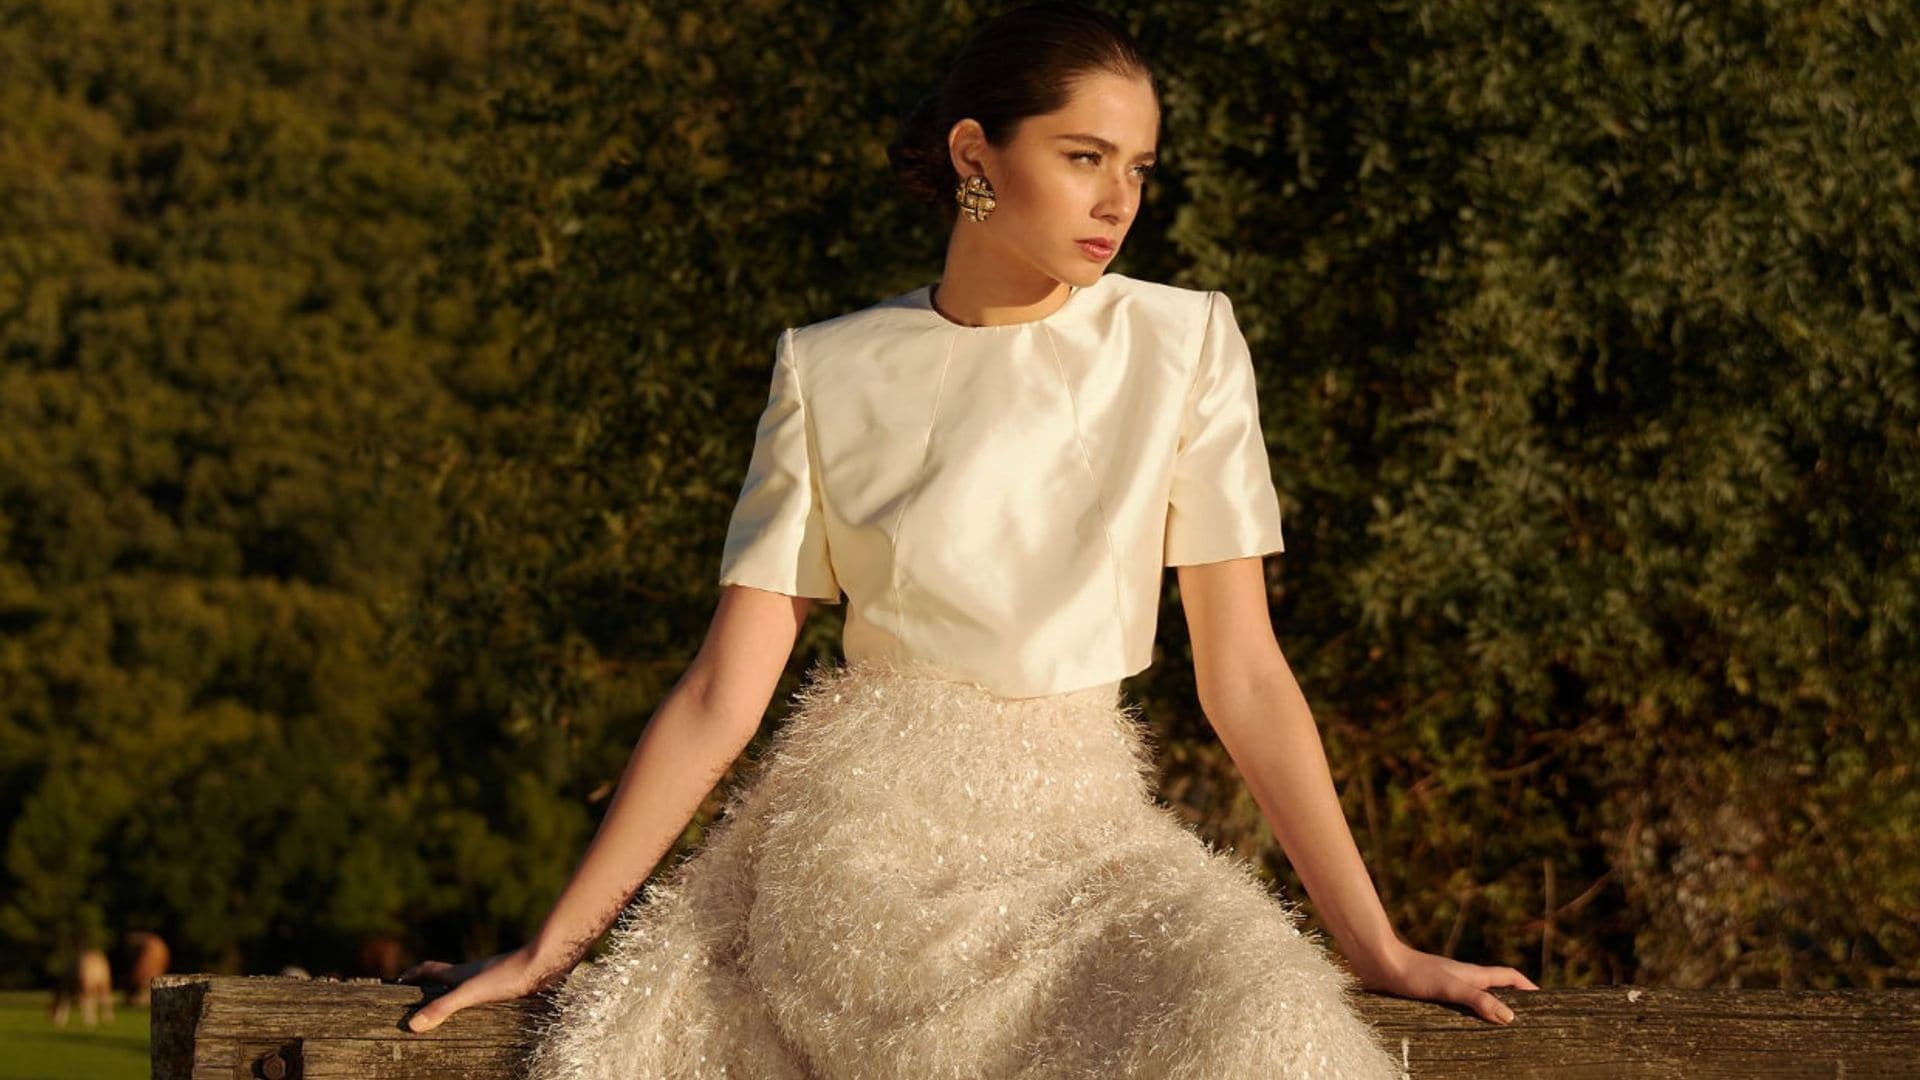 Hablamos con Paloma Reguillo, la diseñadora de vestidos de novia virales que fascina a las madrileñas